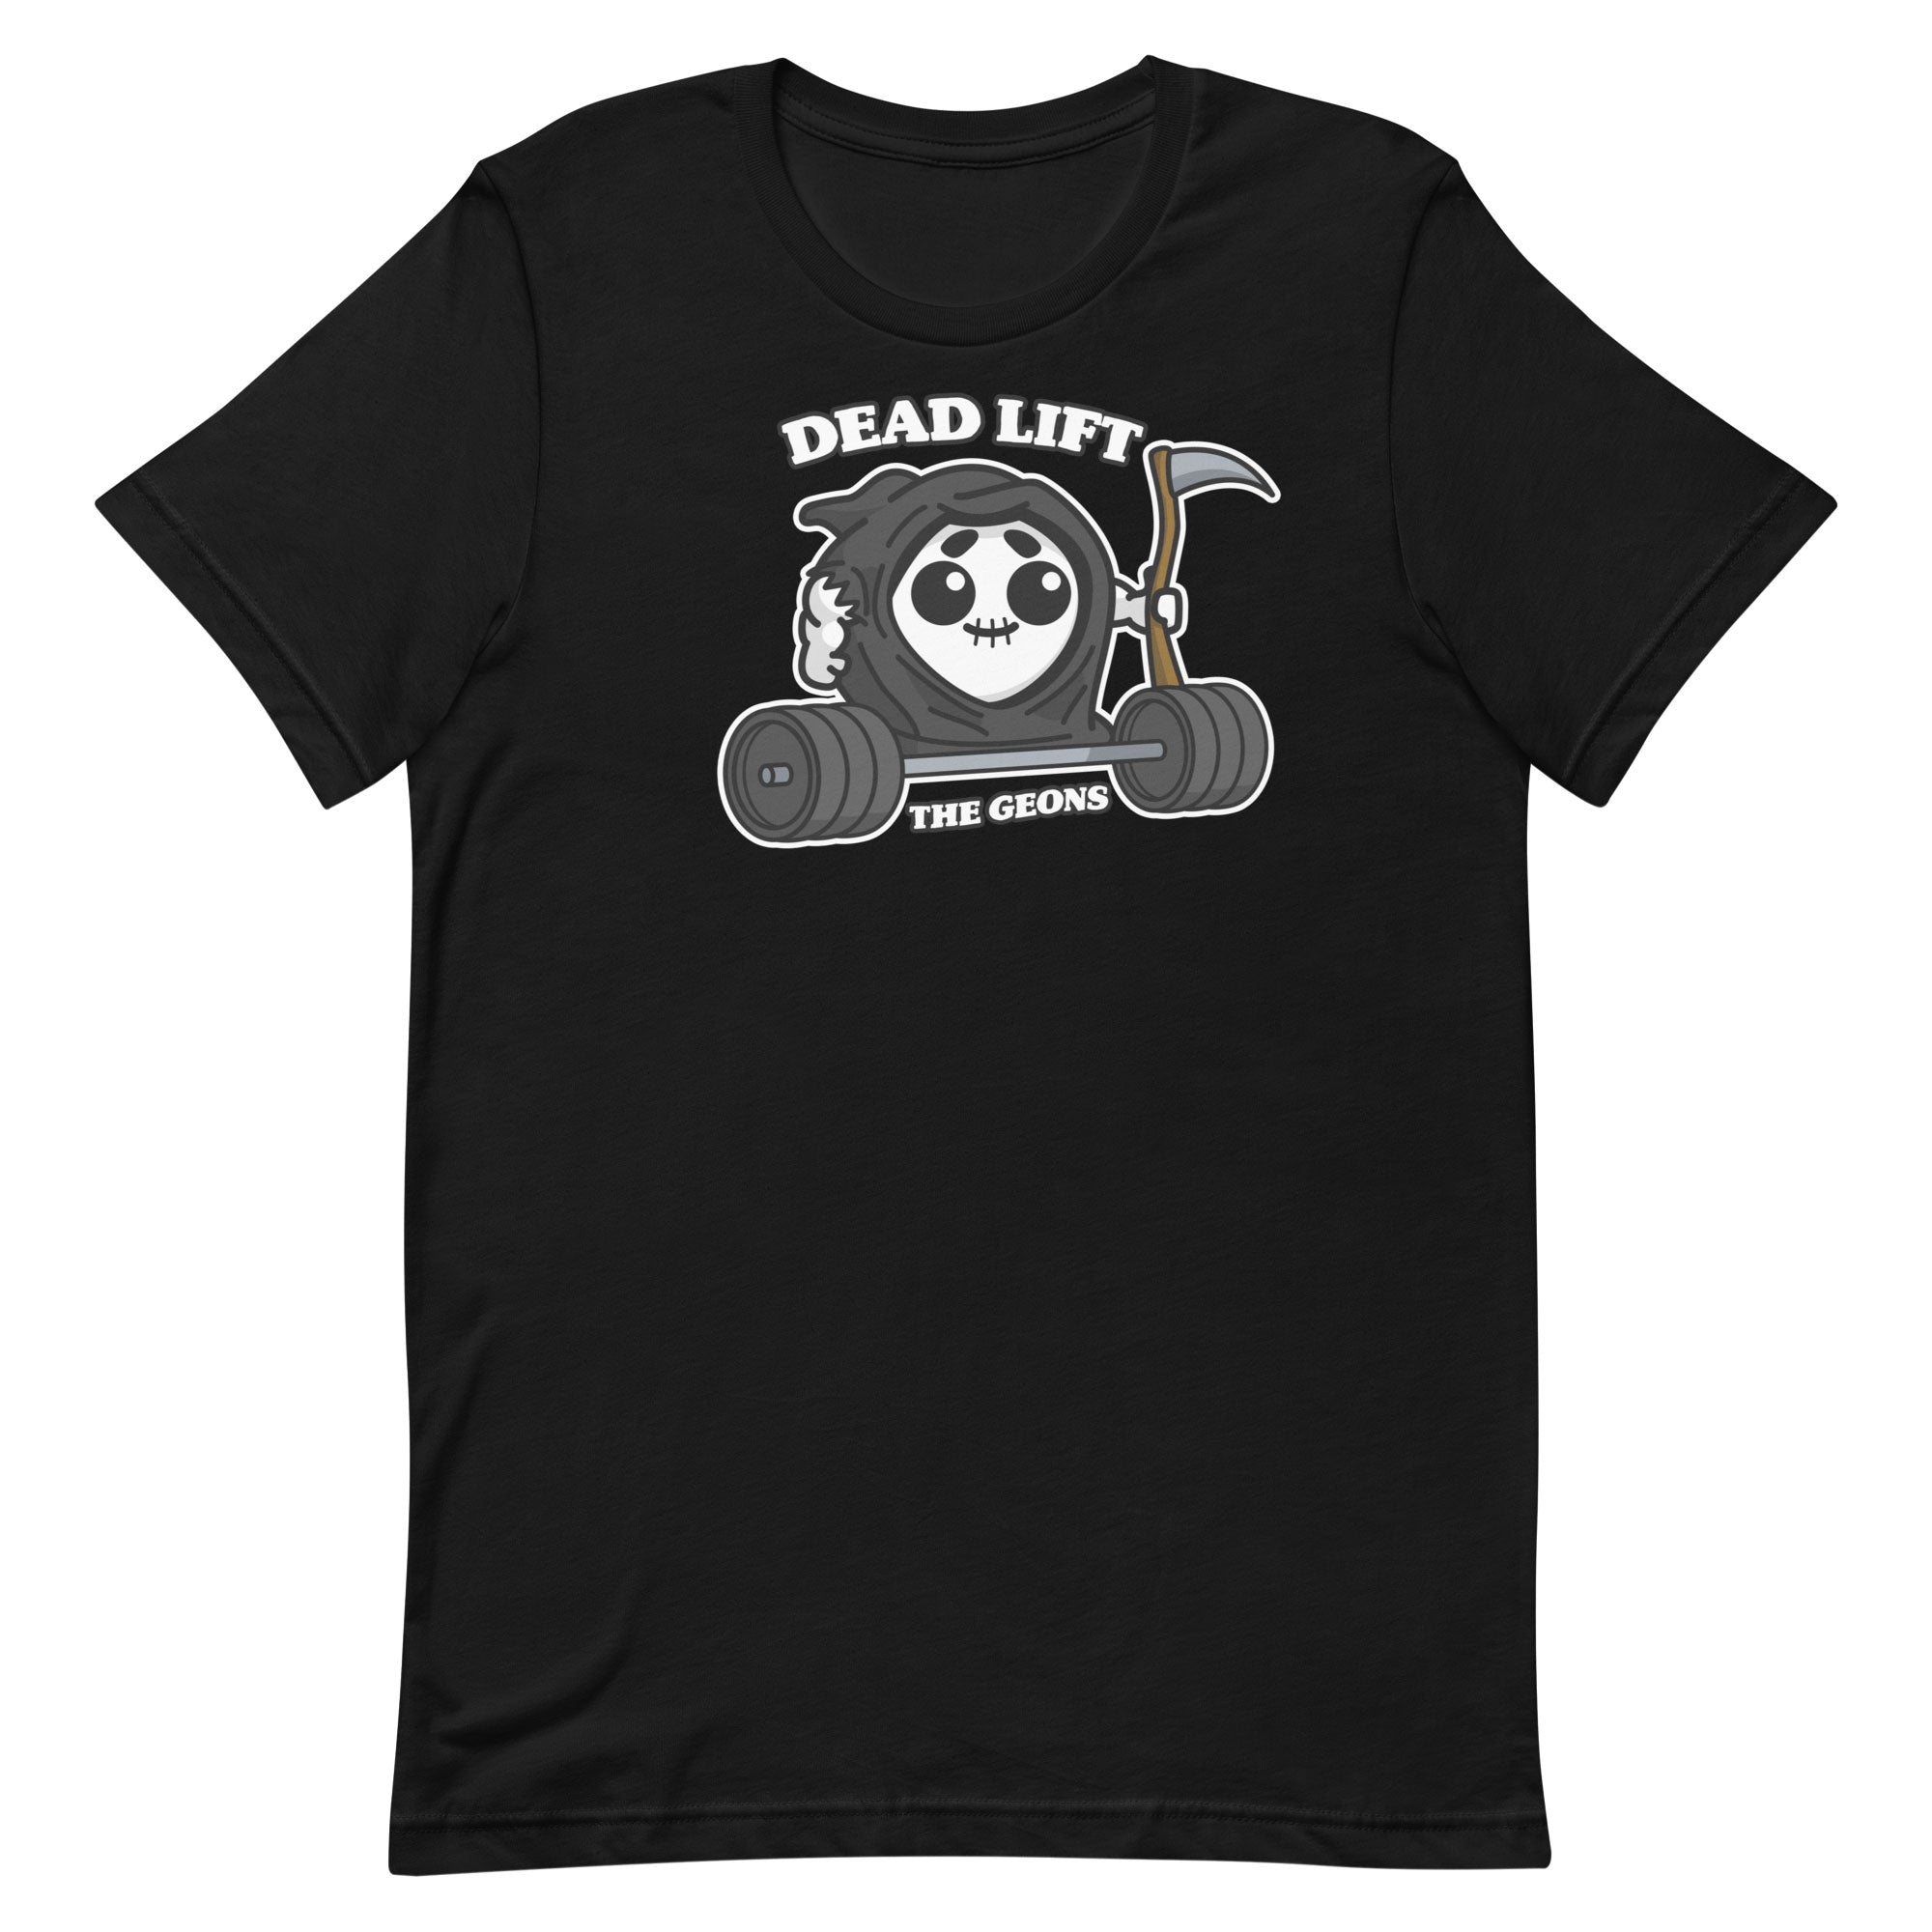 Dead Lift T-Shirt